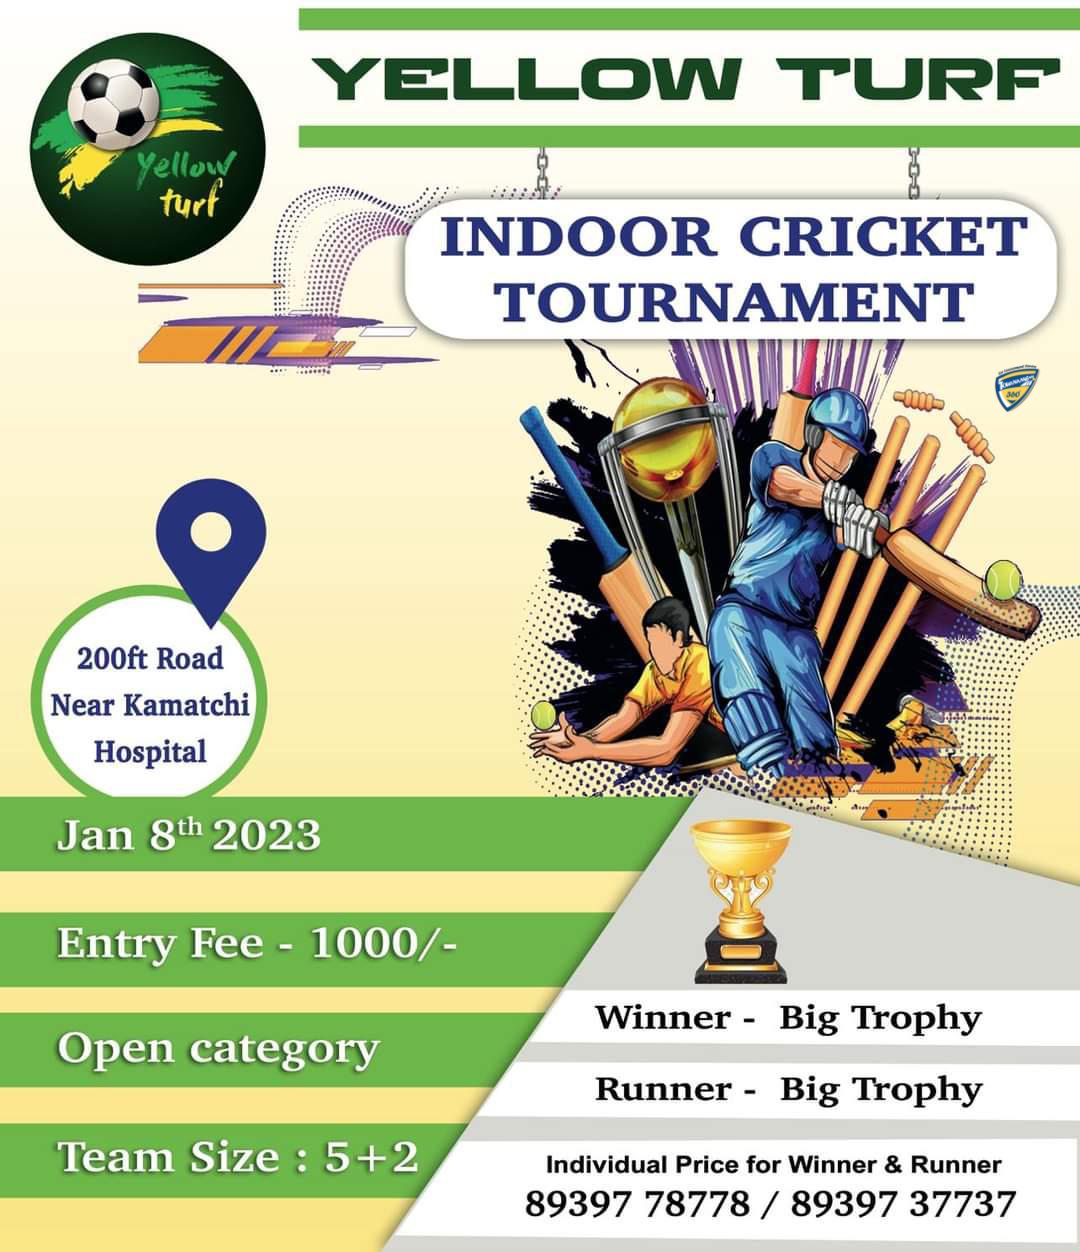 Yellow Turf presents Indoor Cricket Tournament